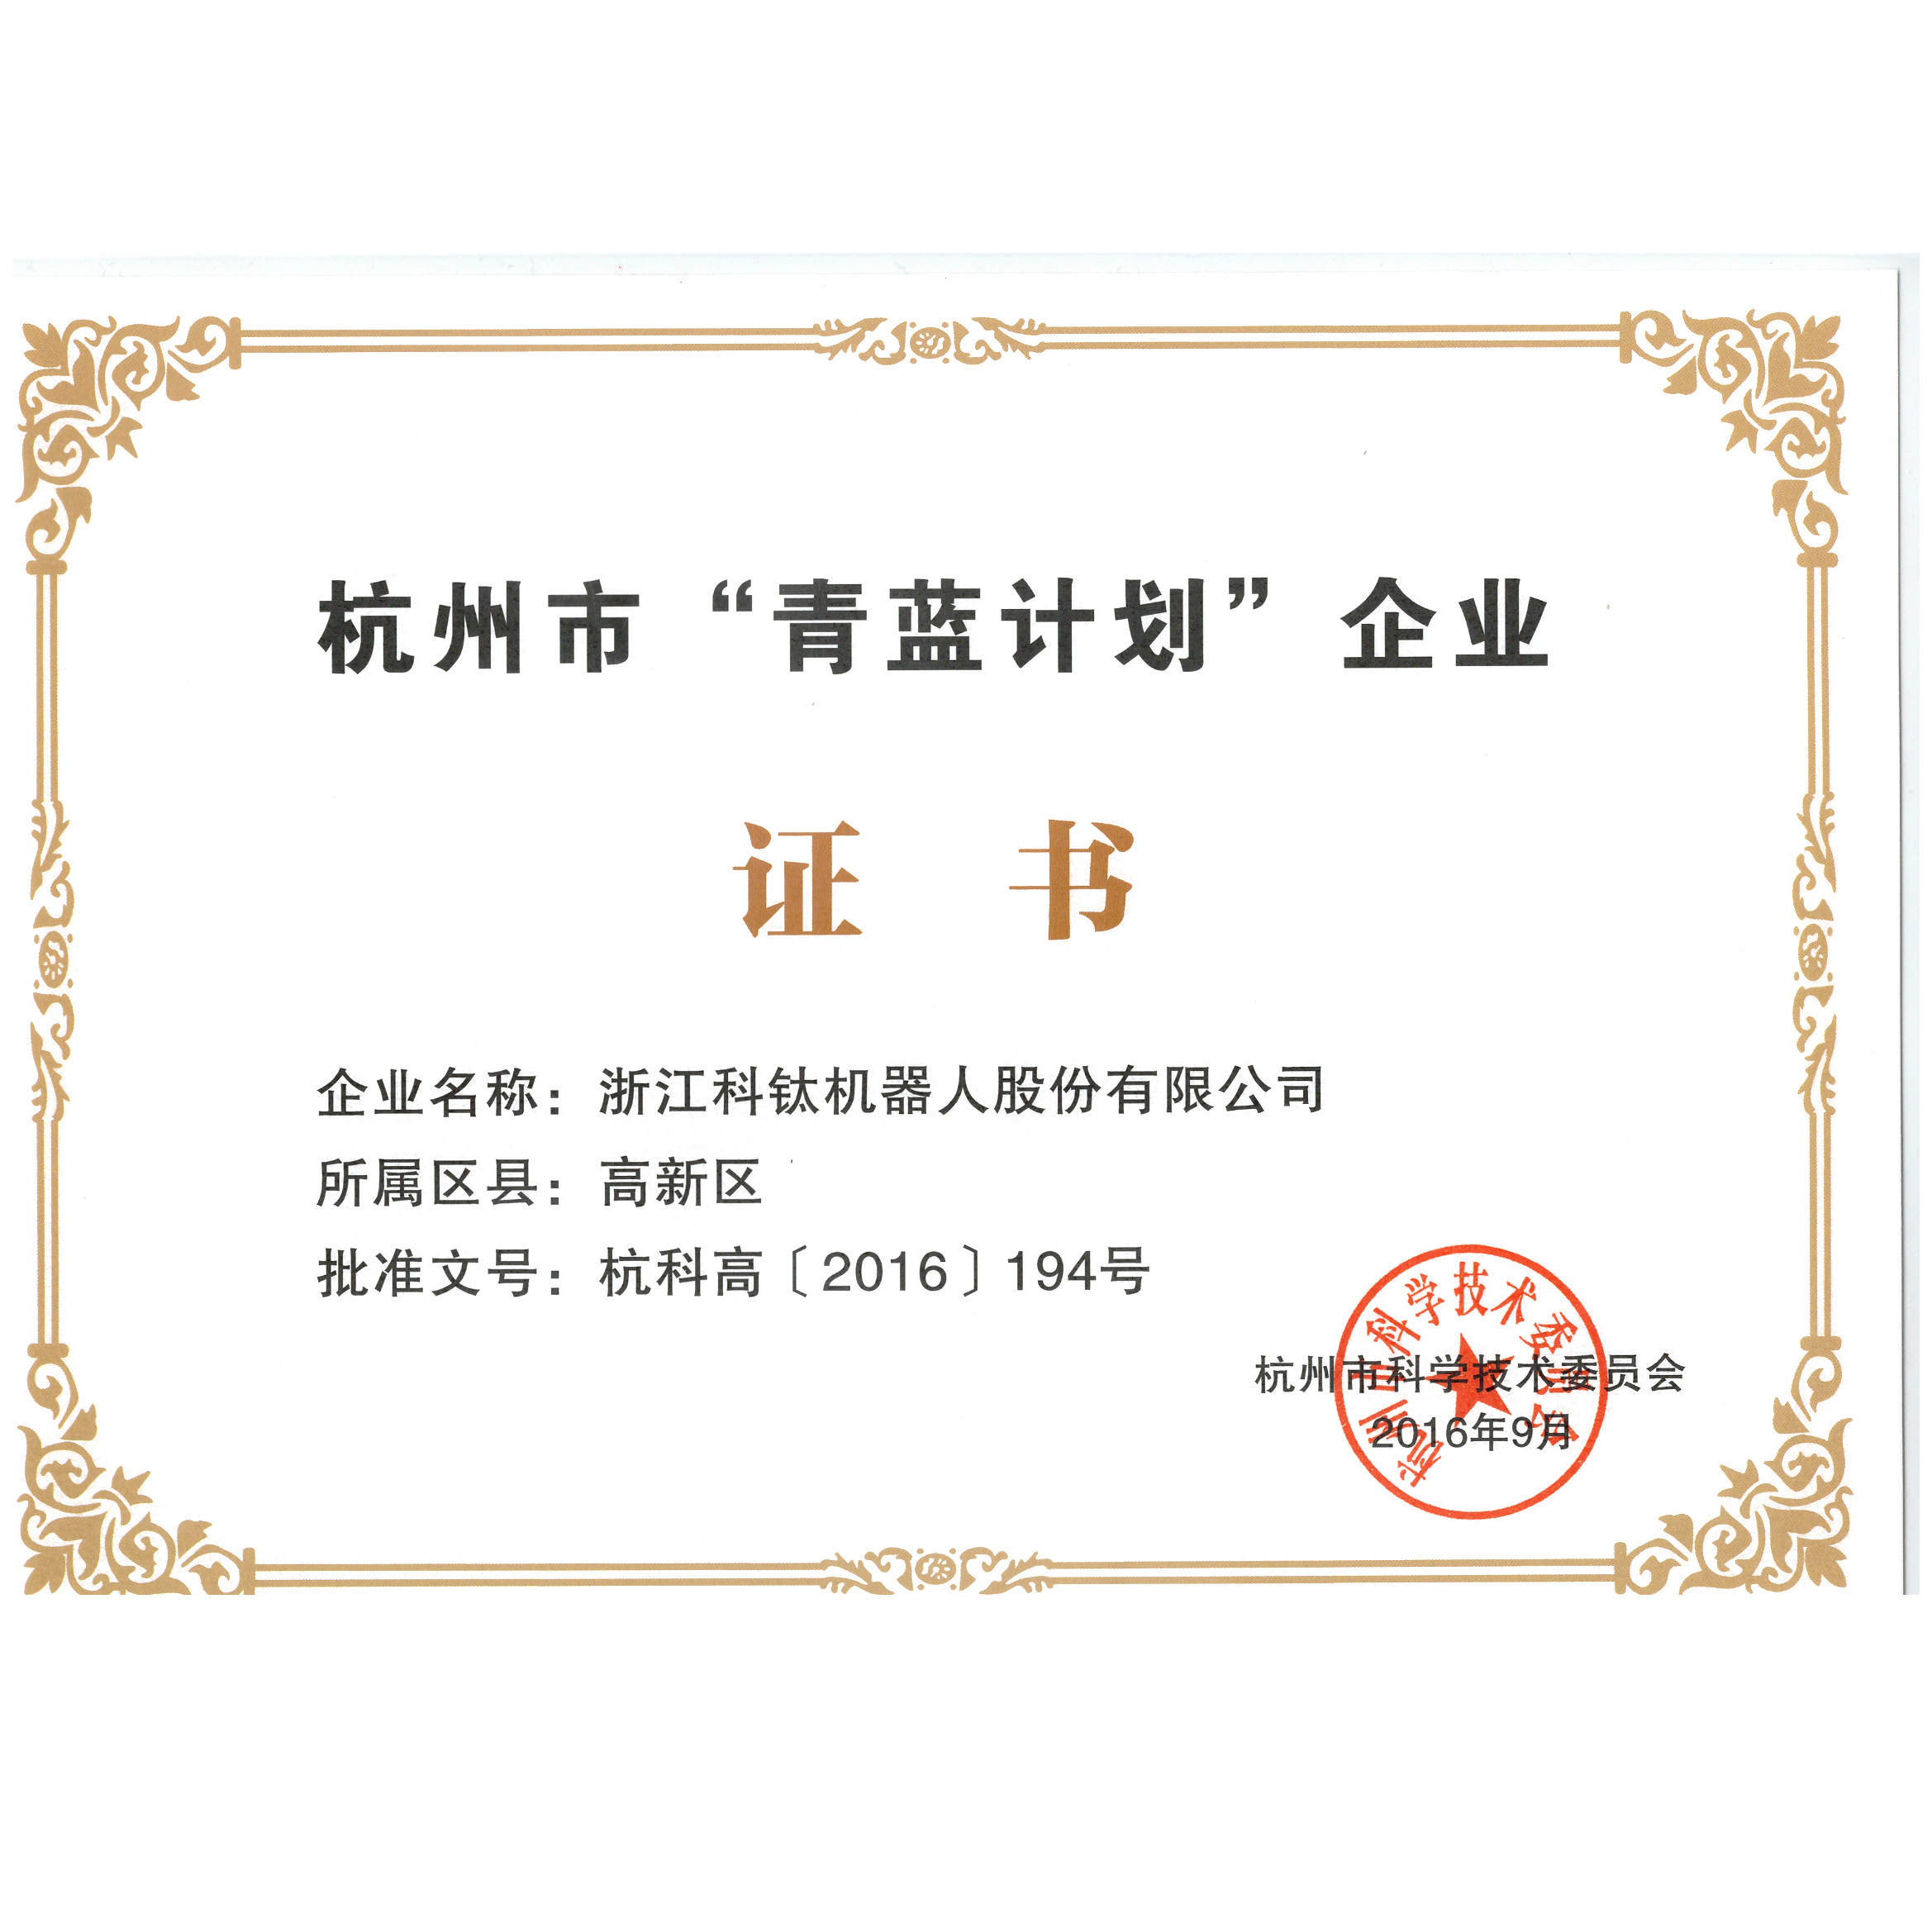 01-企业荣誉-青蓝计划证书